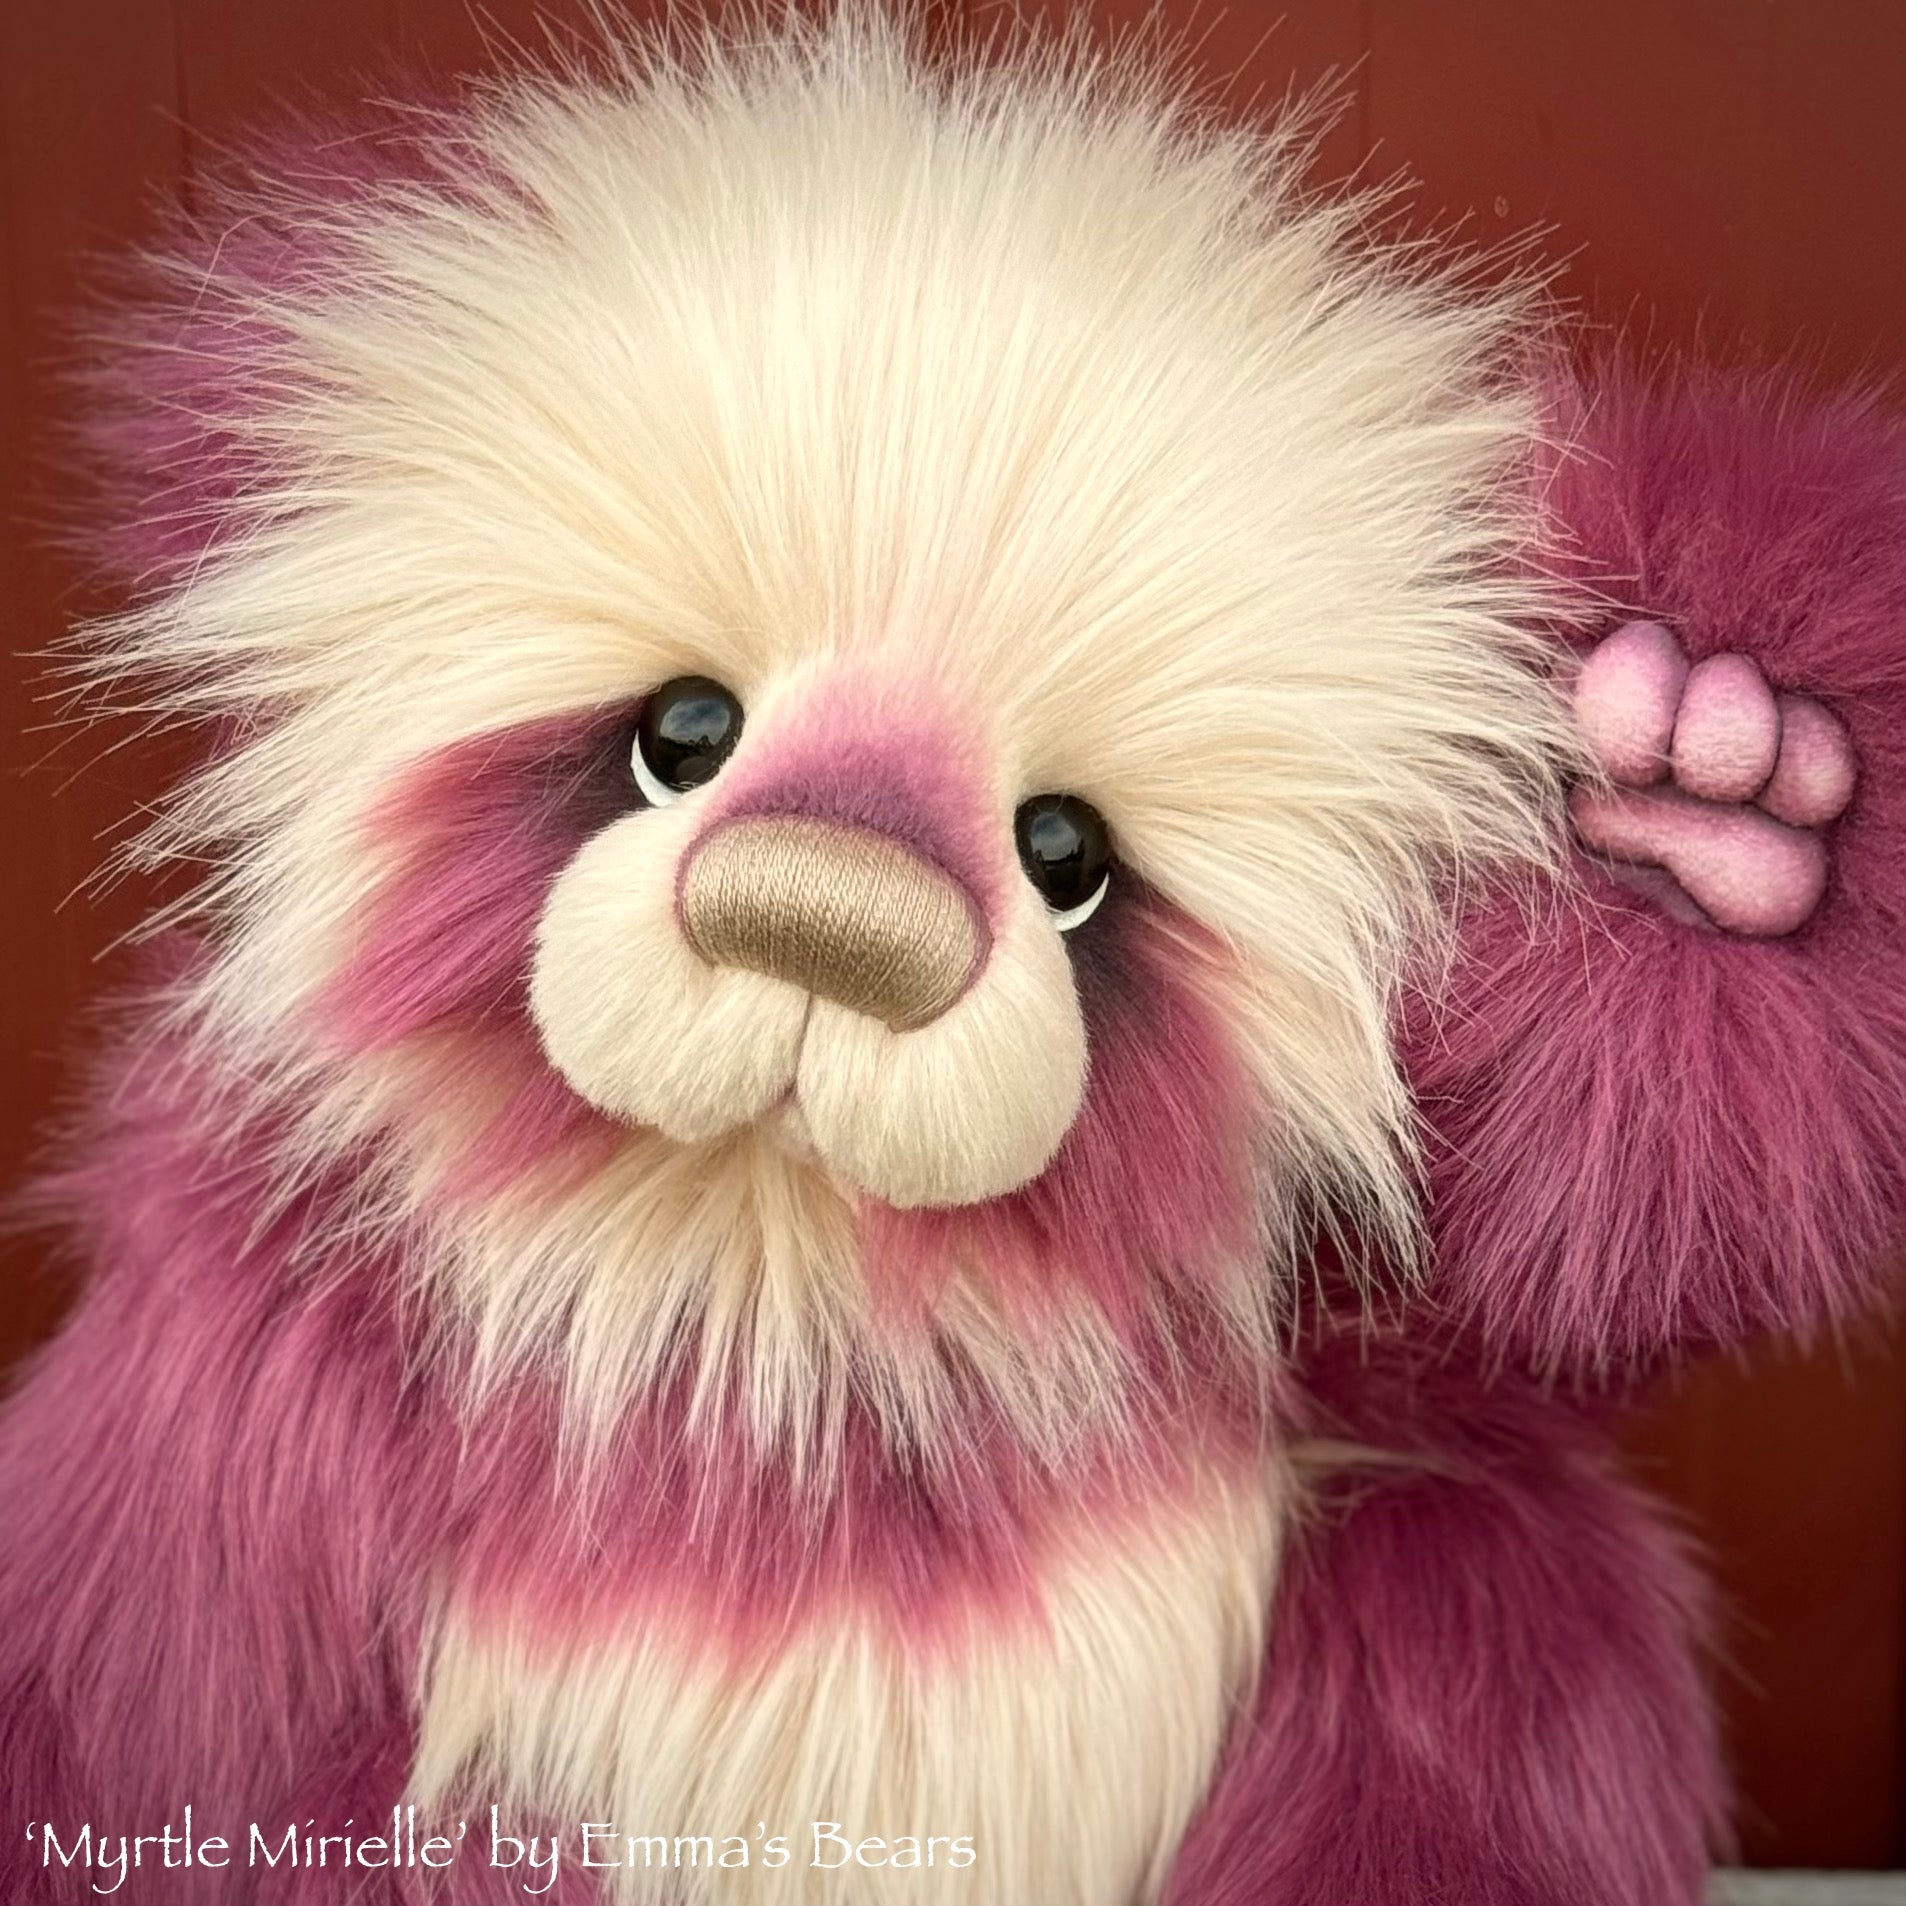 Myrtle Mirielle - 20" Faux Fur Artist Toddler Bear by Emma's Bears - OOAK